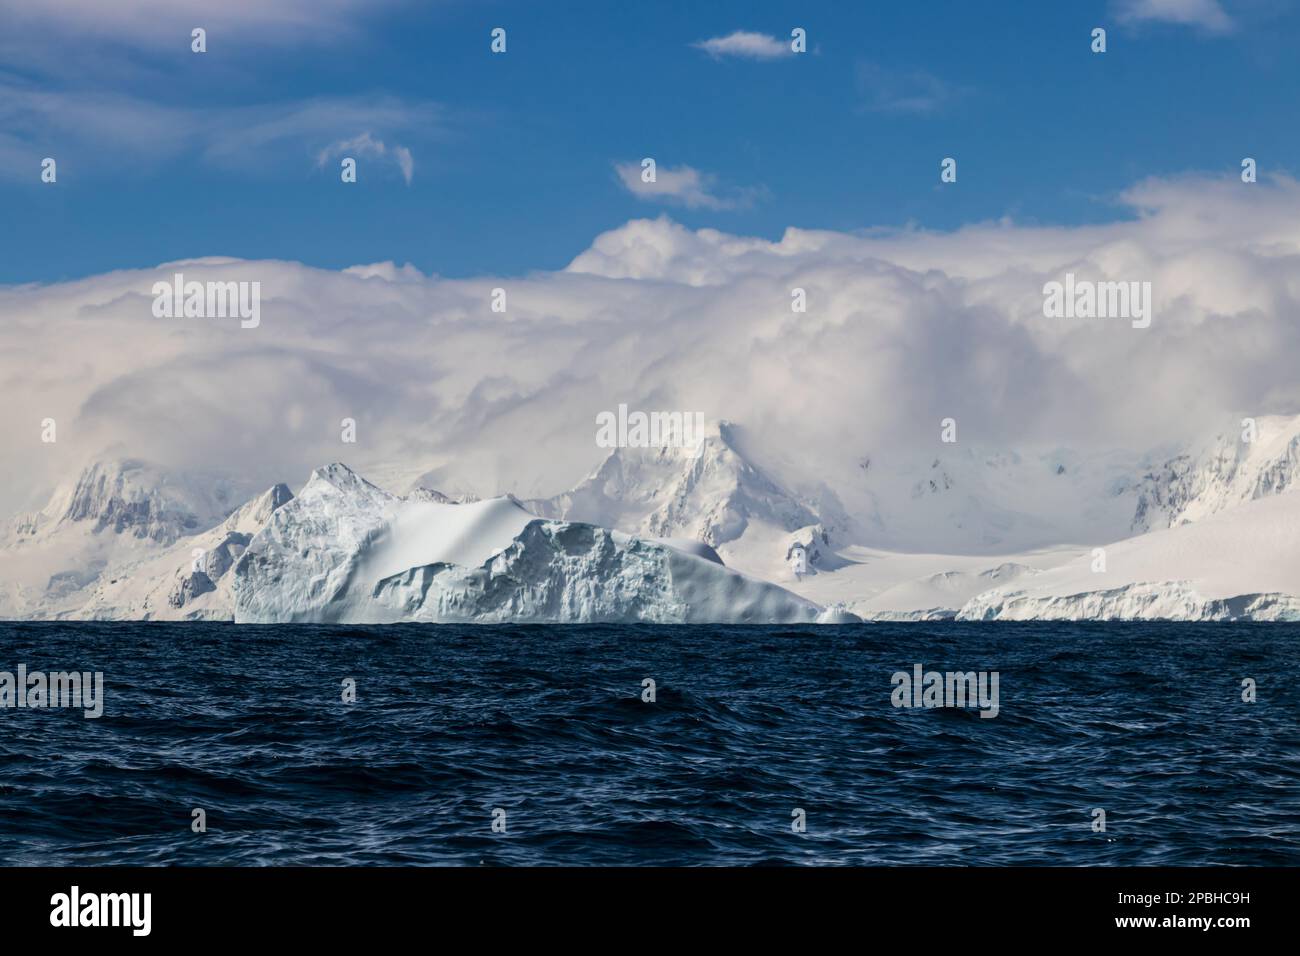 Vue sur l'océan du rivage de la péninsule Antarctique. Montagnes avec neige et glace, sous une épaisse couche de nuages. Océan bleu foncé au premier plan; ciel bleu a Banque D'Images